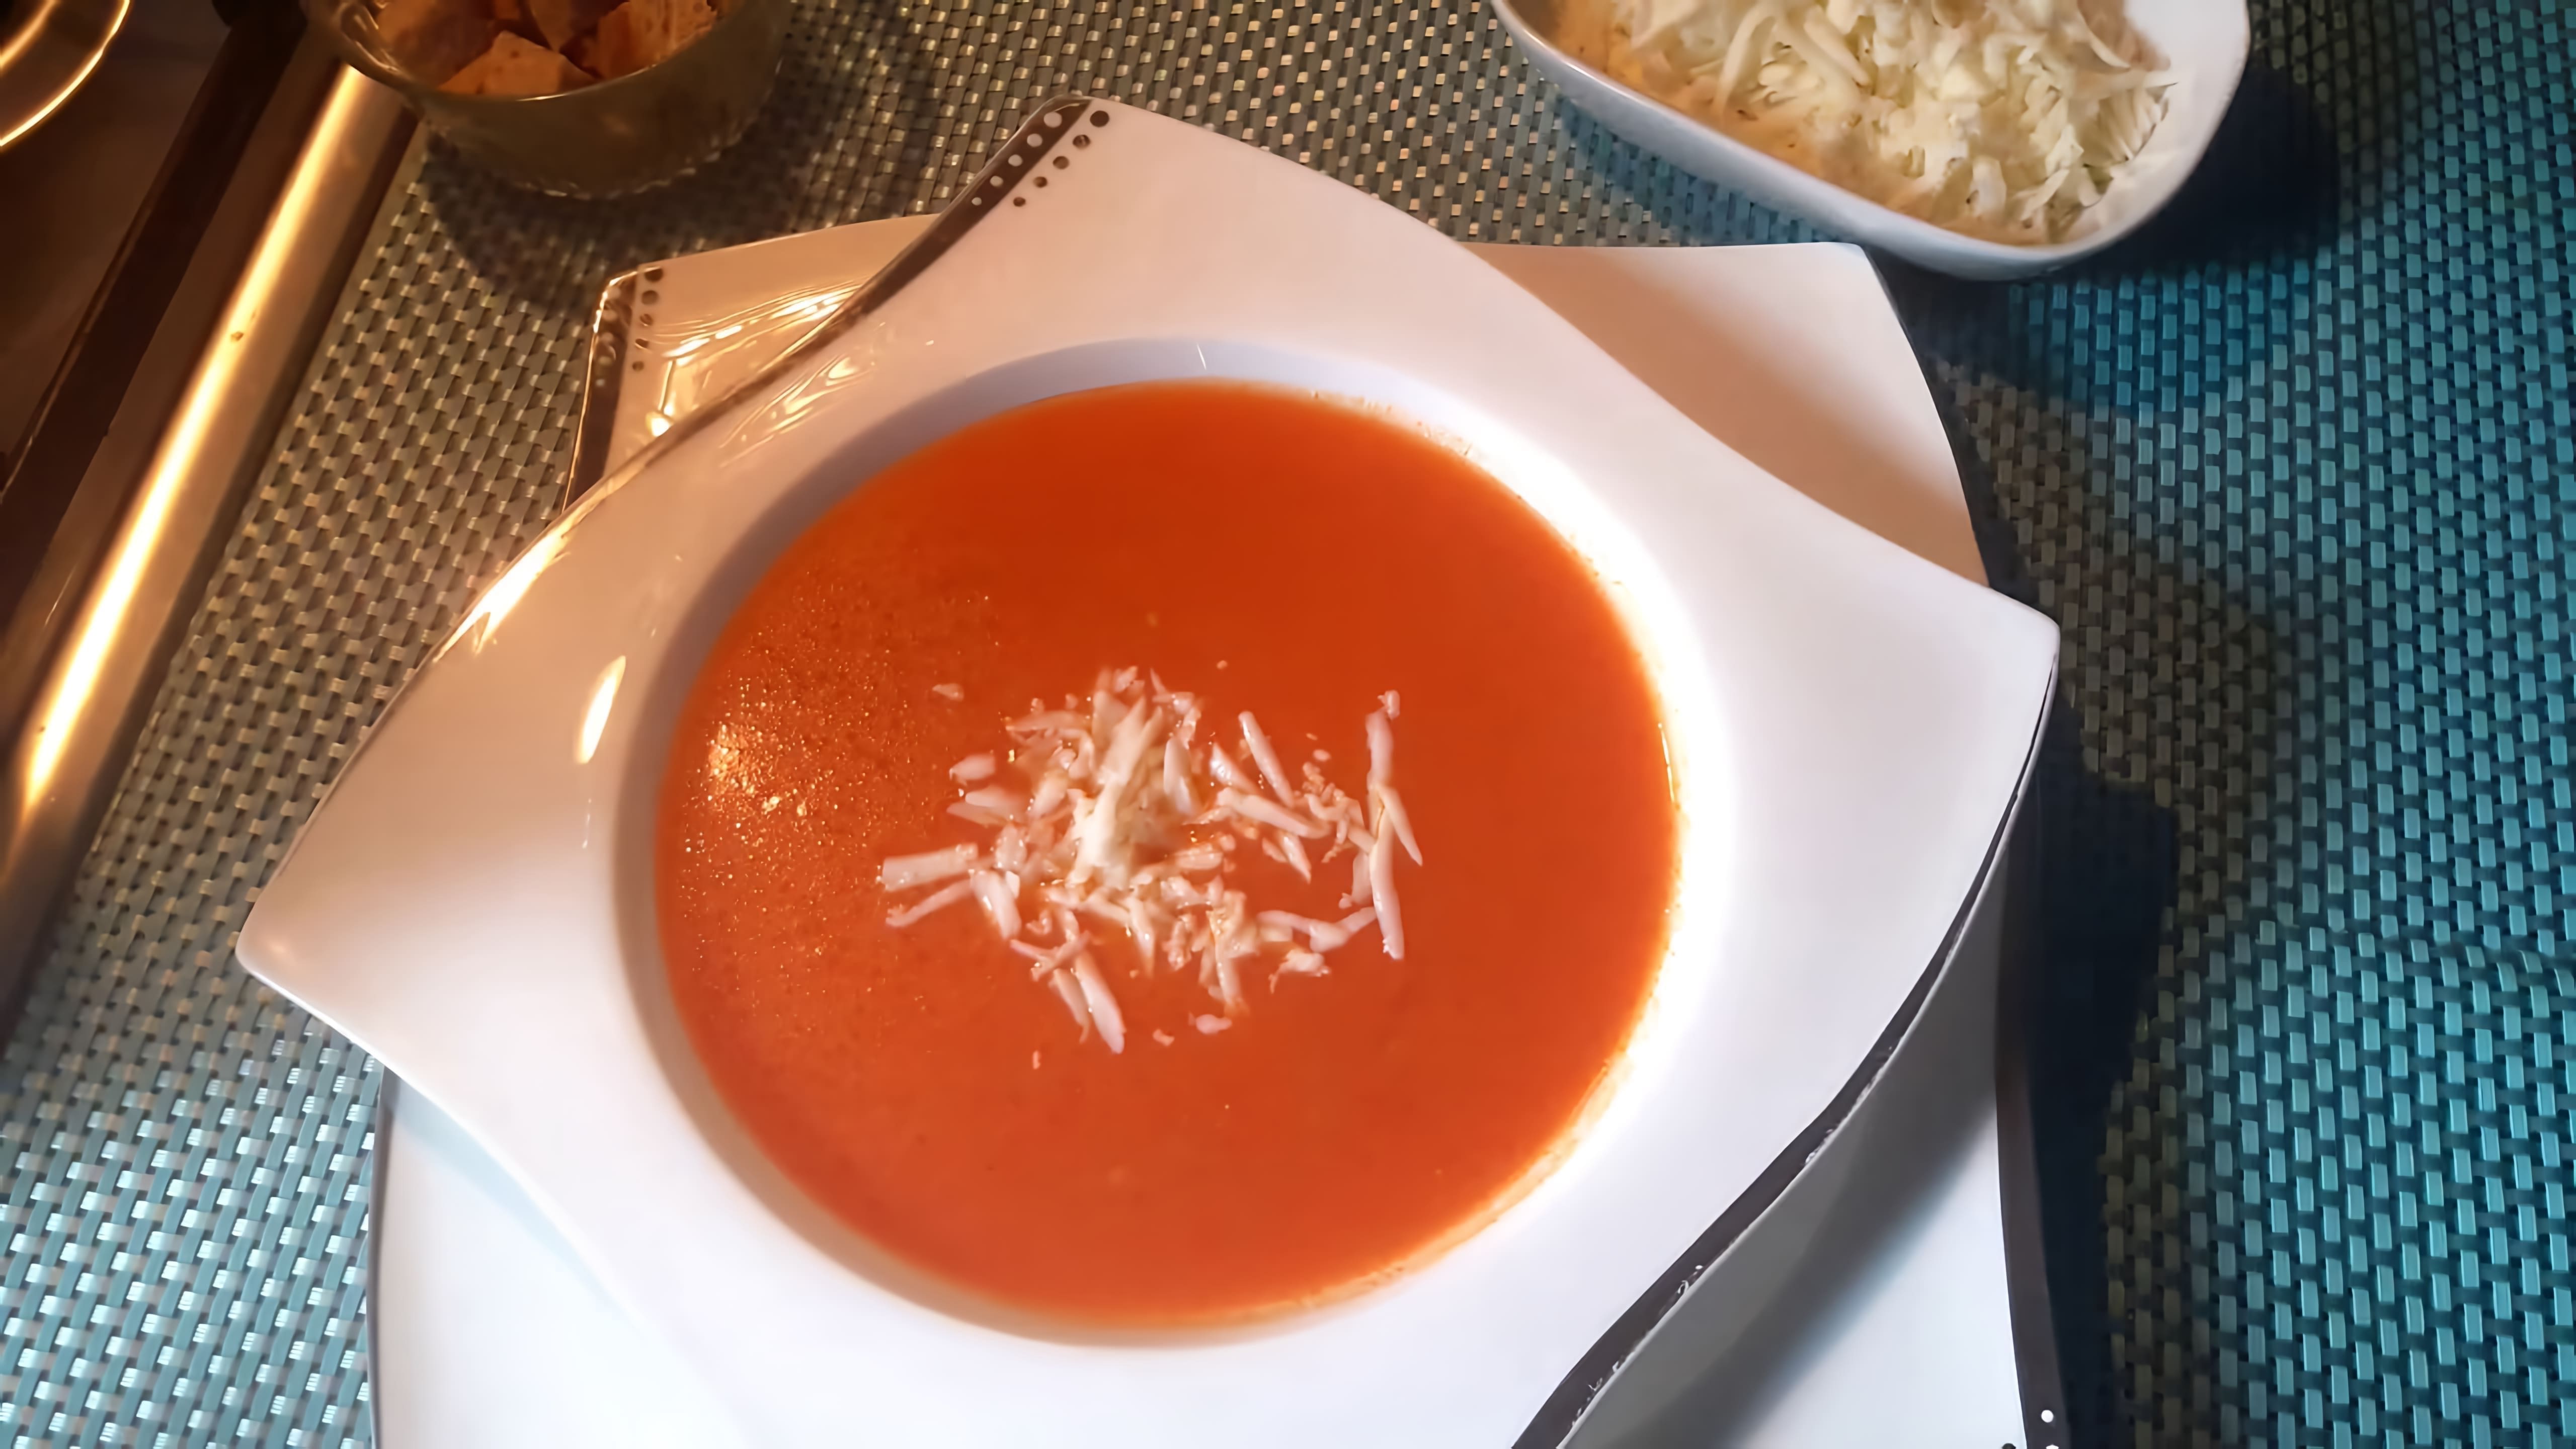 В этом видео демонстрируется рецепт приготовления турецкого томатного супа